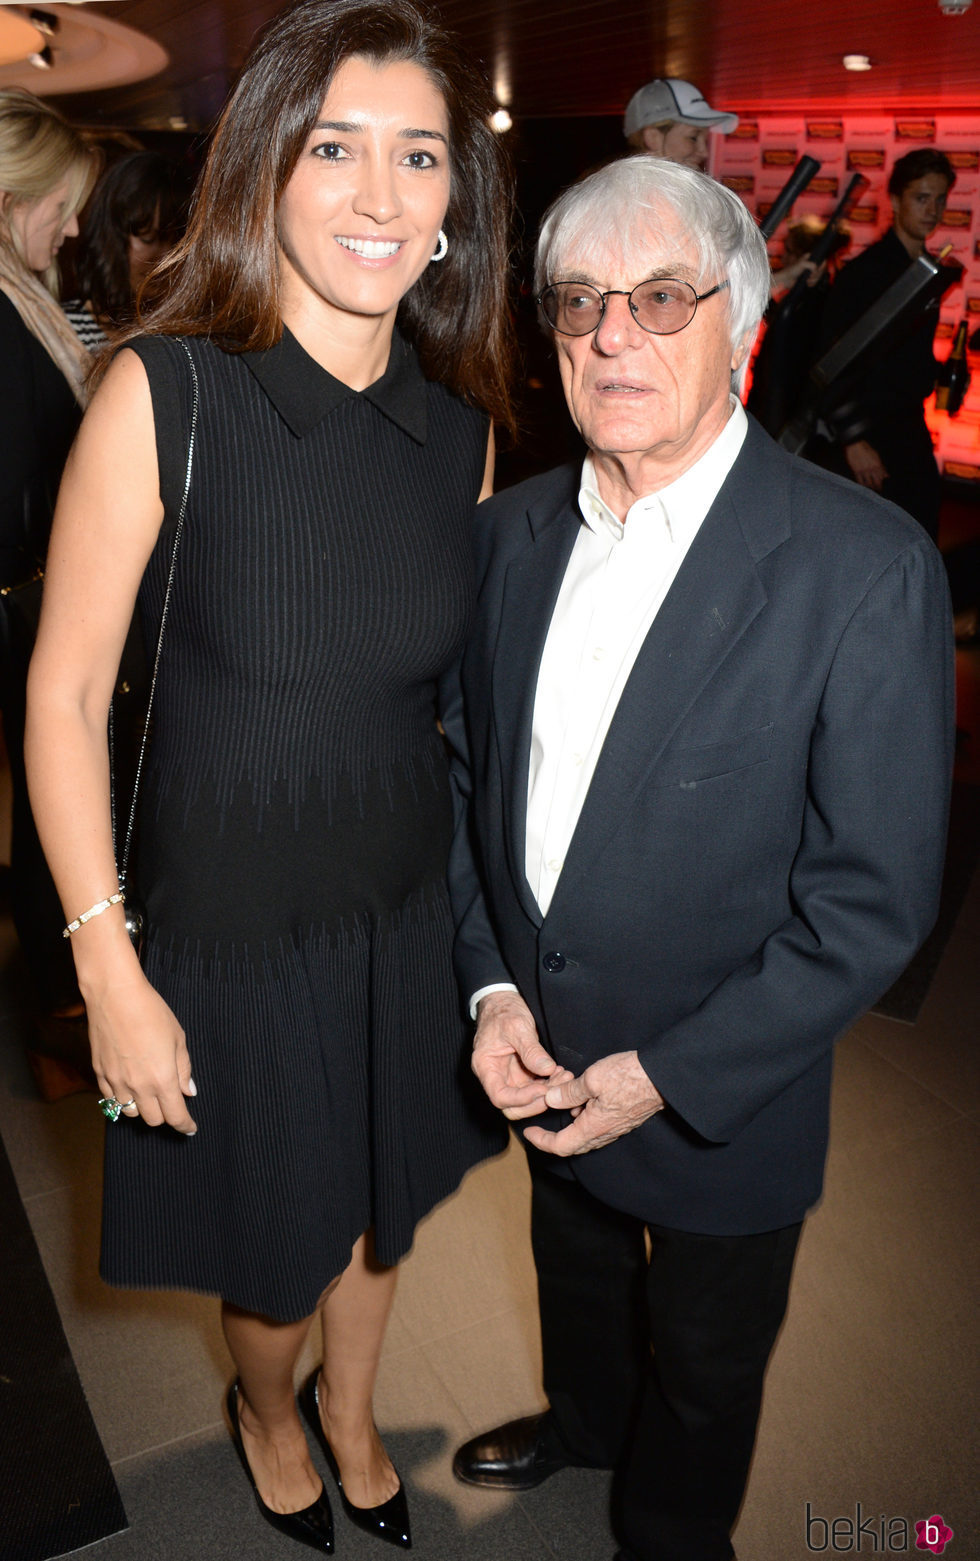 Bernie Ecclestone y Fabiana Flosi en una fiesta de McLaren